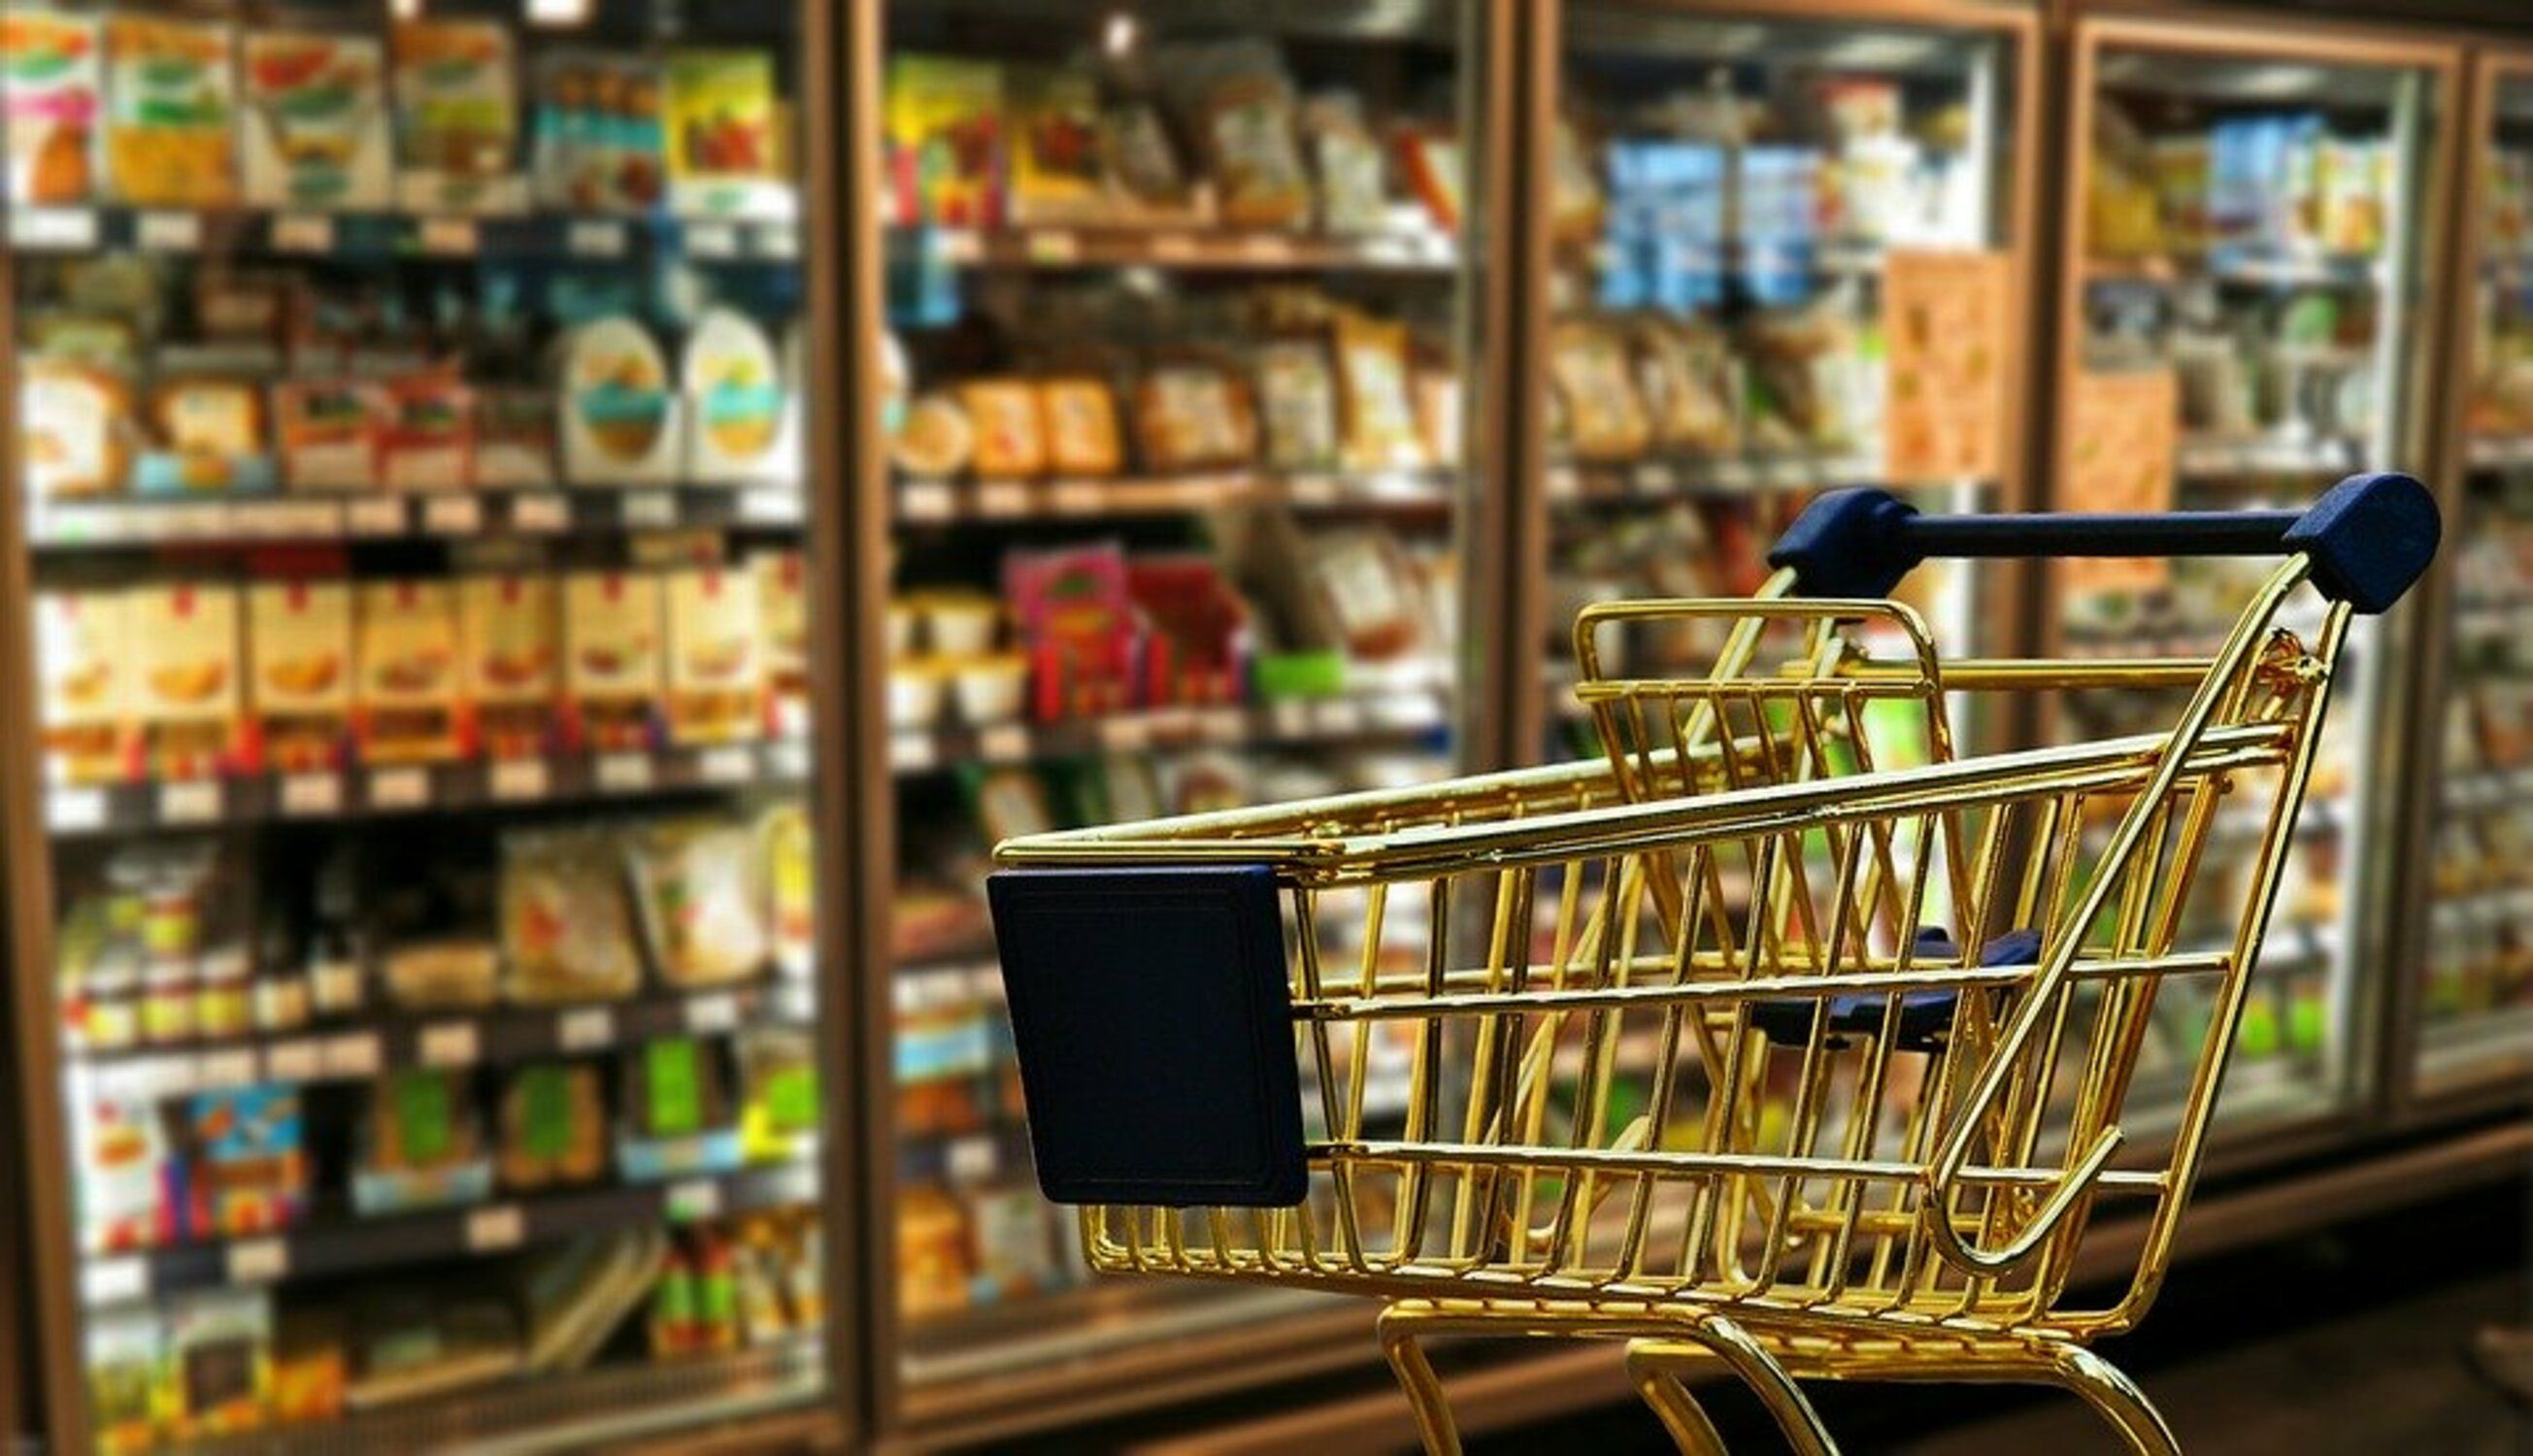 Horaris dels supermercats oberts el 15 d'agost: Mercadona, Aldi, Lidl, Carrefour...